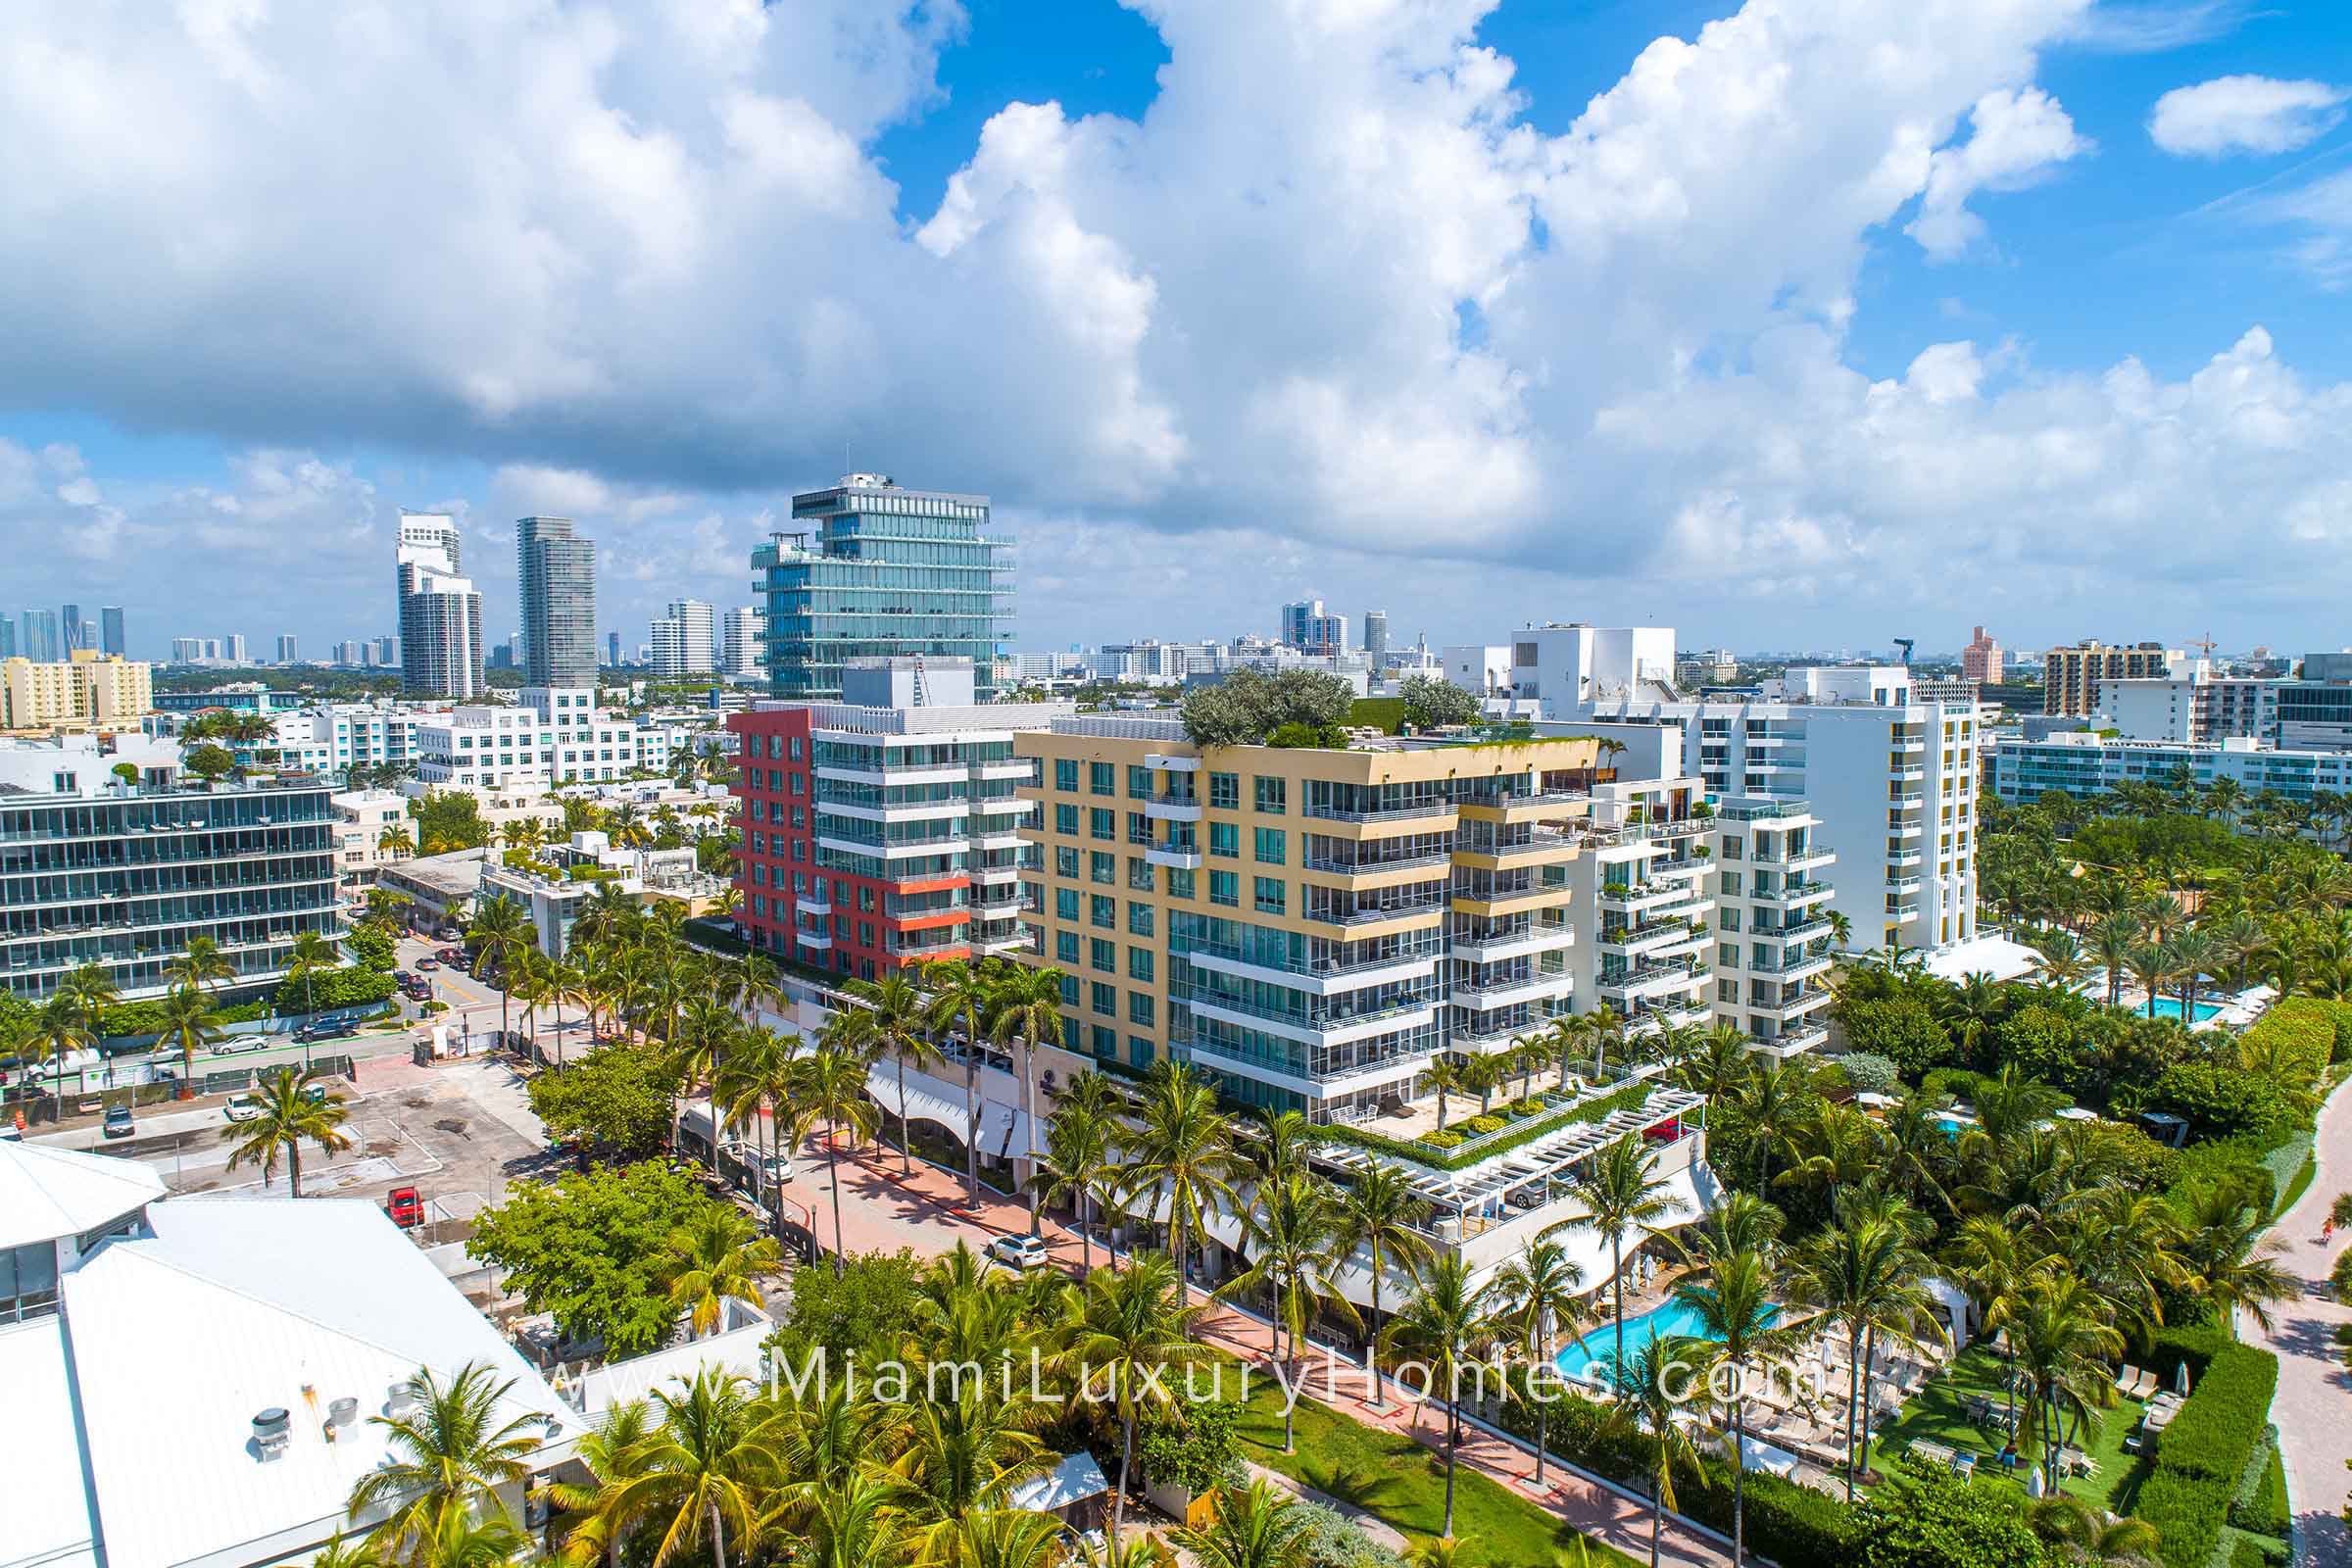 Hilton Bentley Beach Miami Condos in South Beach